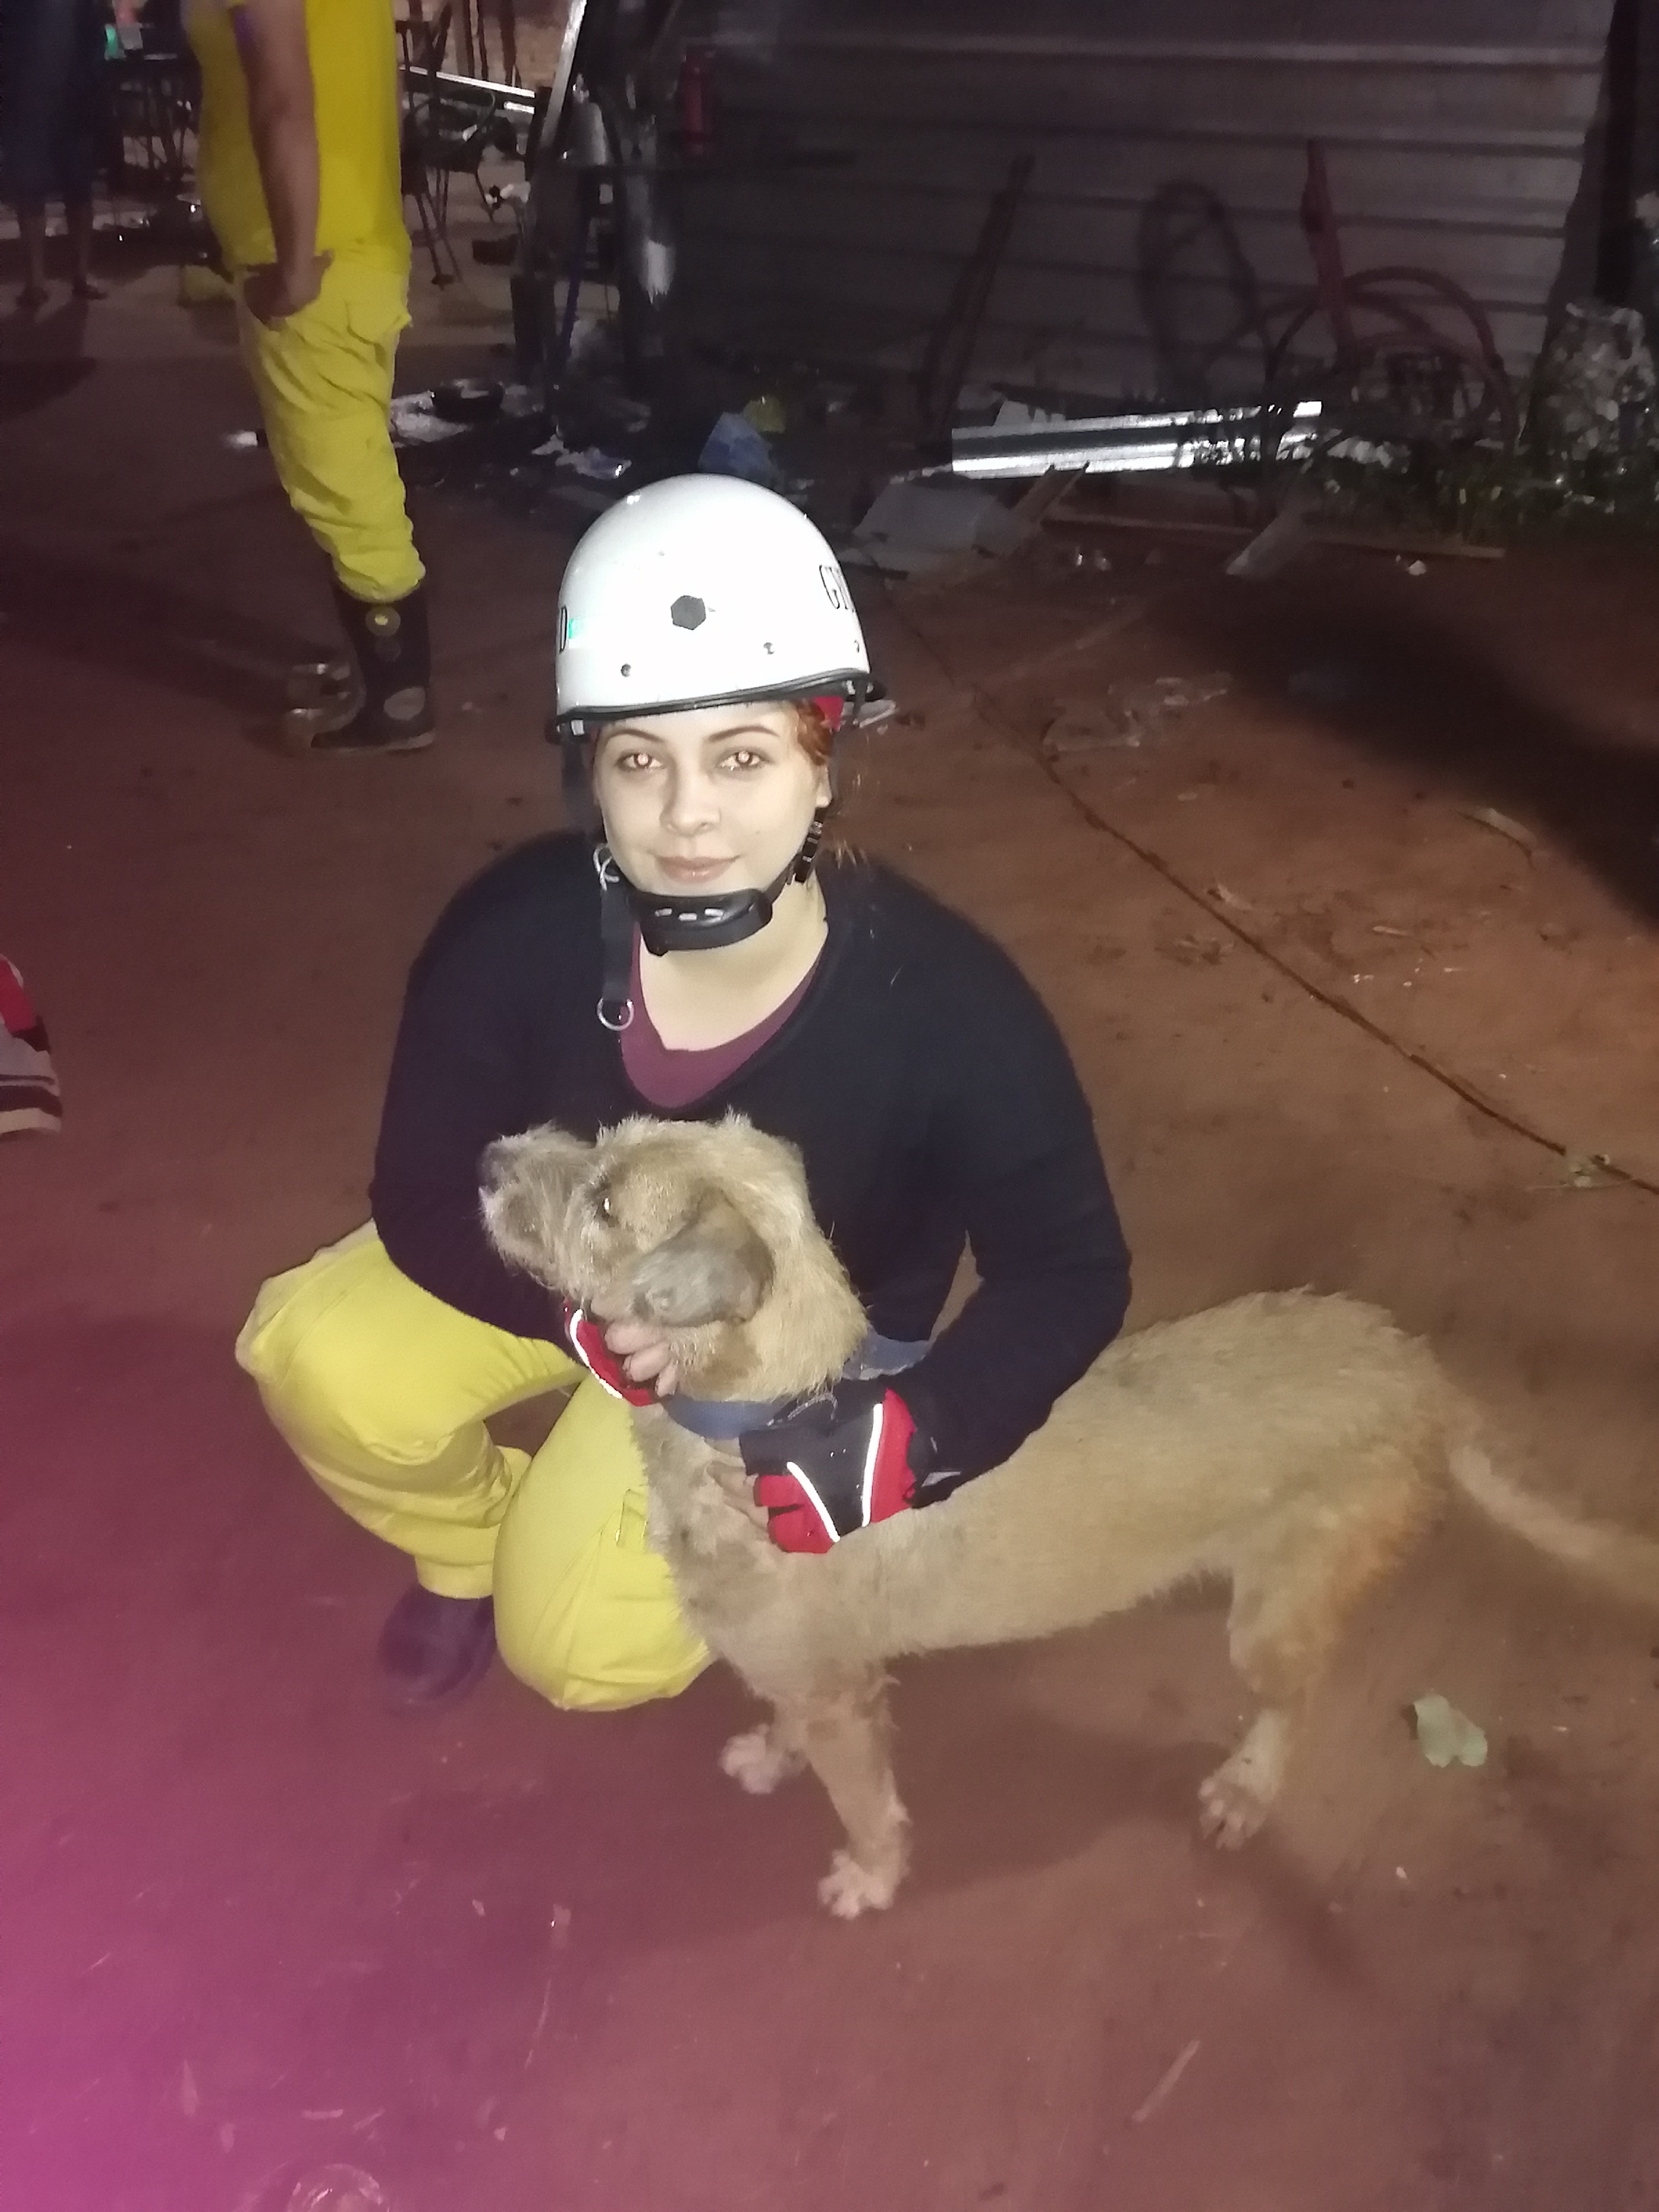 El perrito fue rescatado por los bomberos voluntarios tras varias horas de trabajo. Foto: Gentileza